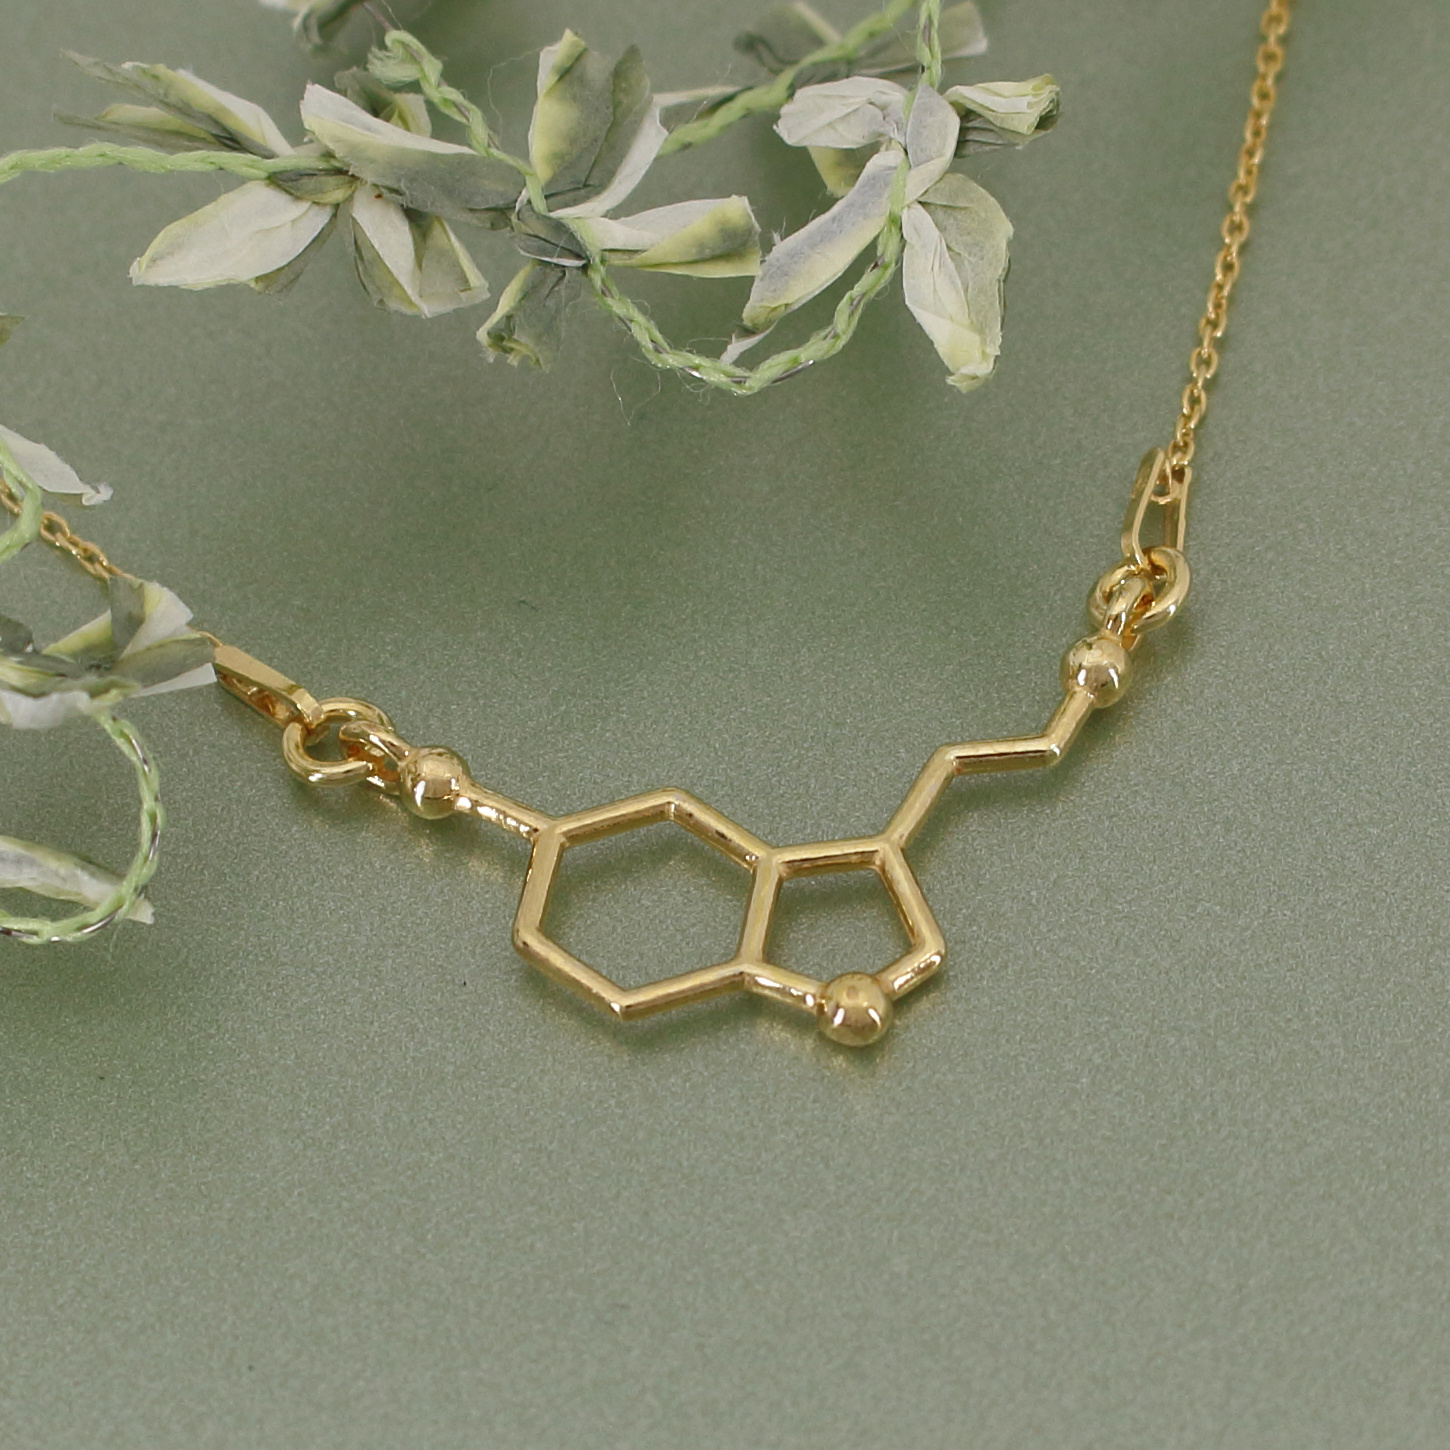 ARLIZI Schmuck Halskette Serotonin Molecül Sterling Silber vergoldet